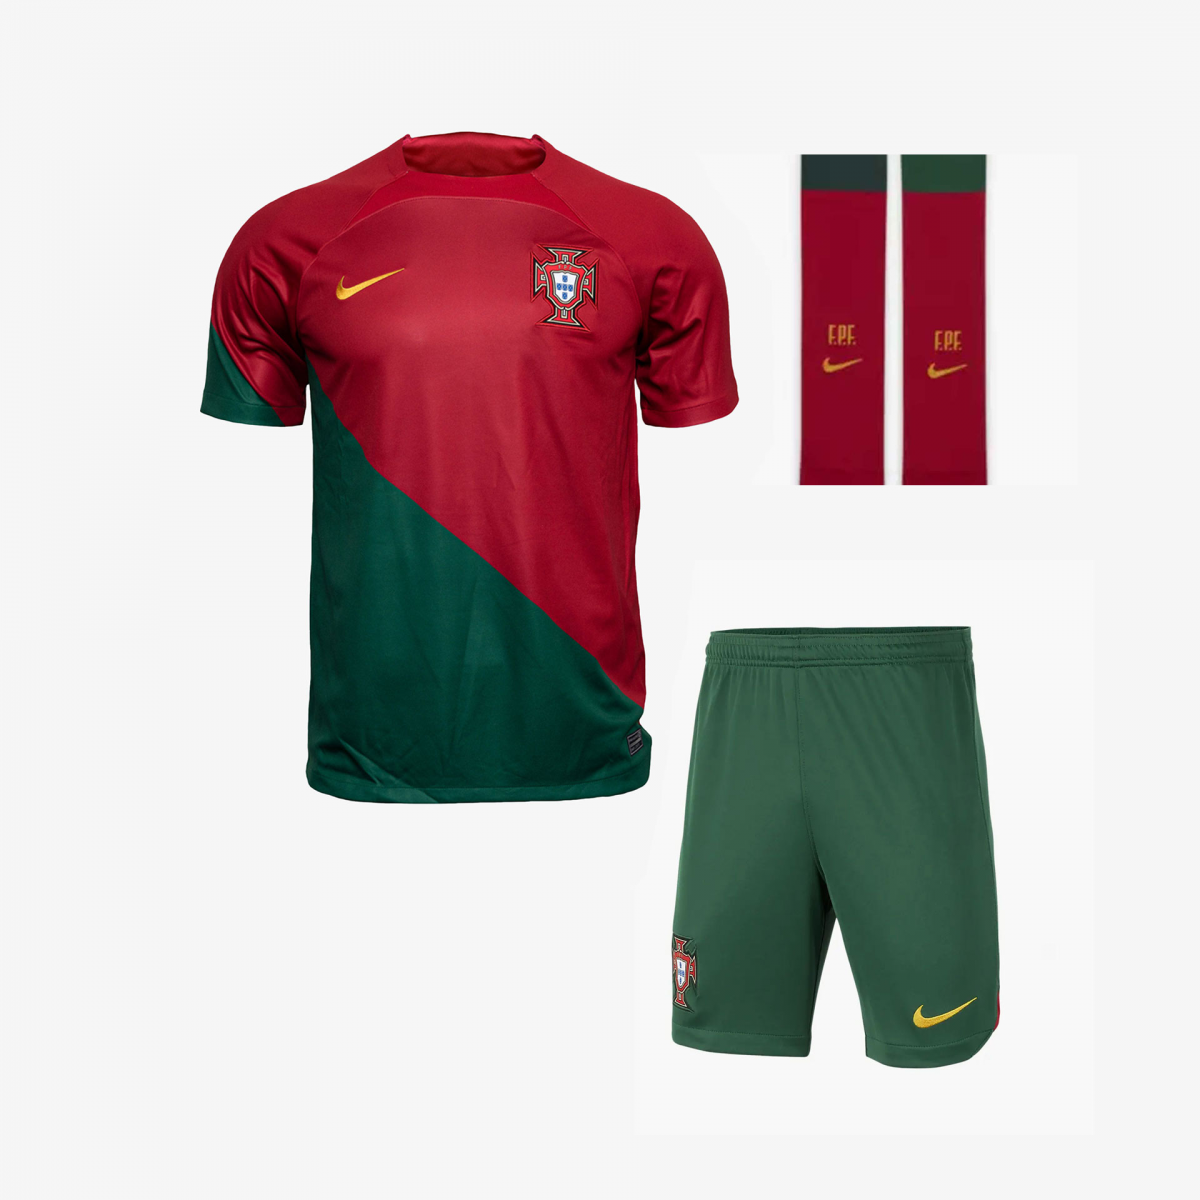 Nouveau Maillot Officiel de Football Homme Nike Portugal Domicile